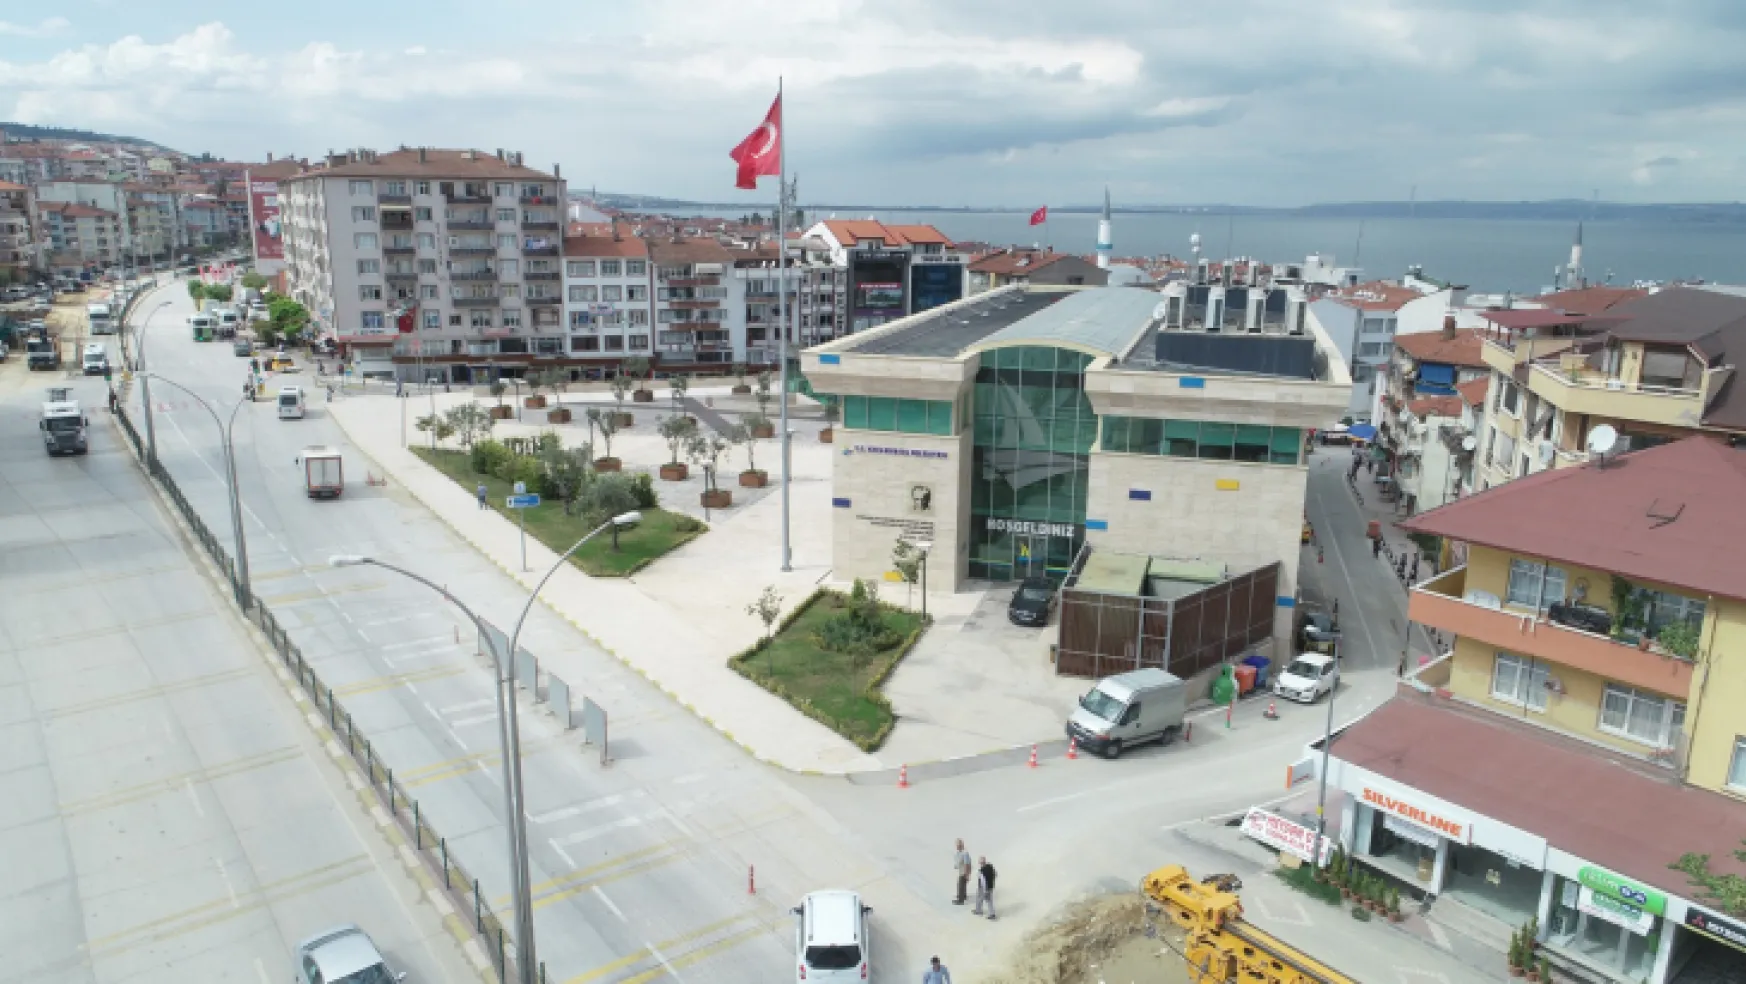 Karamürsel'e geçici seyahat kart ofisi açılıyor